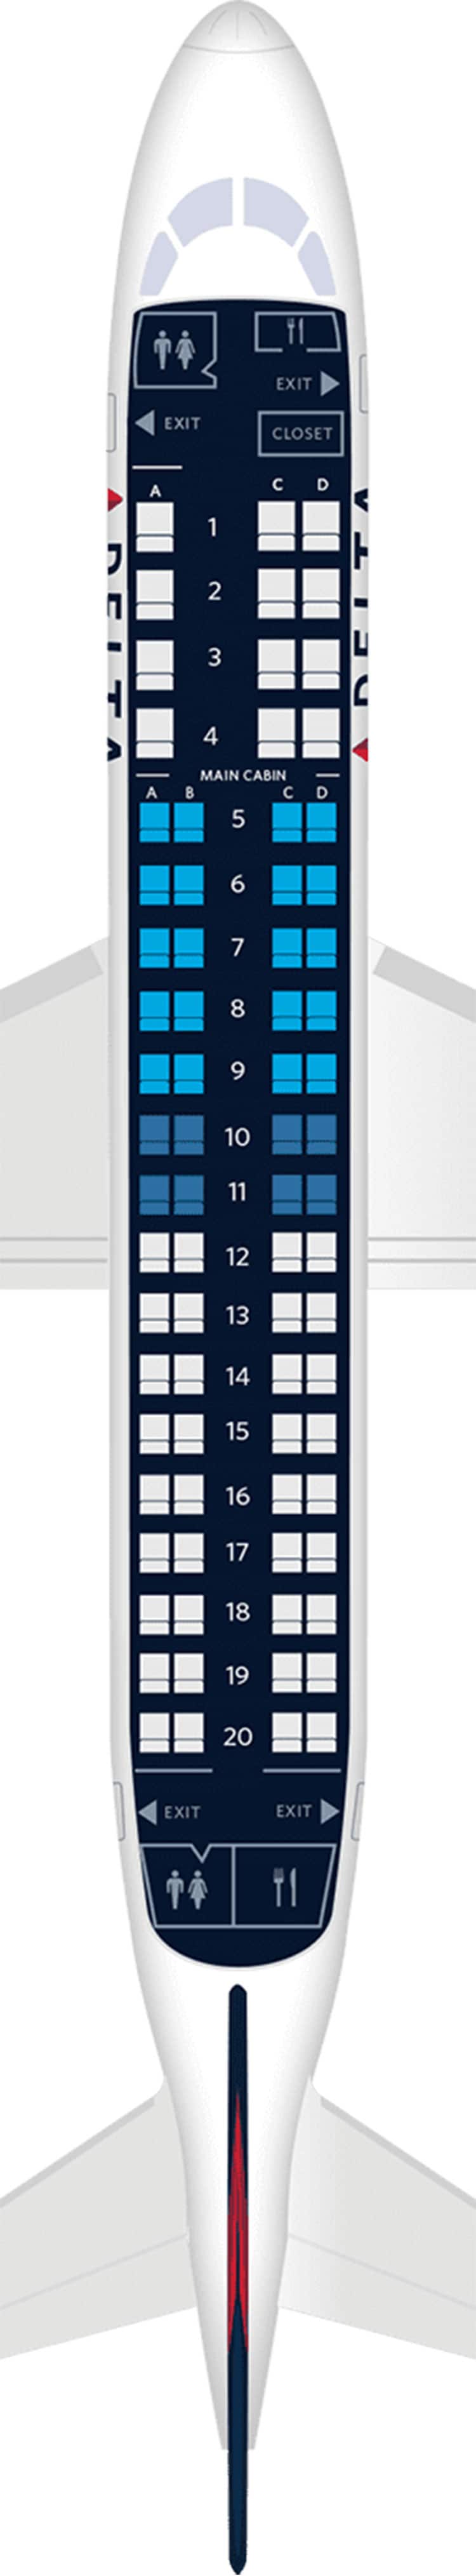 巴航190飞机座位布局图图片